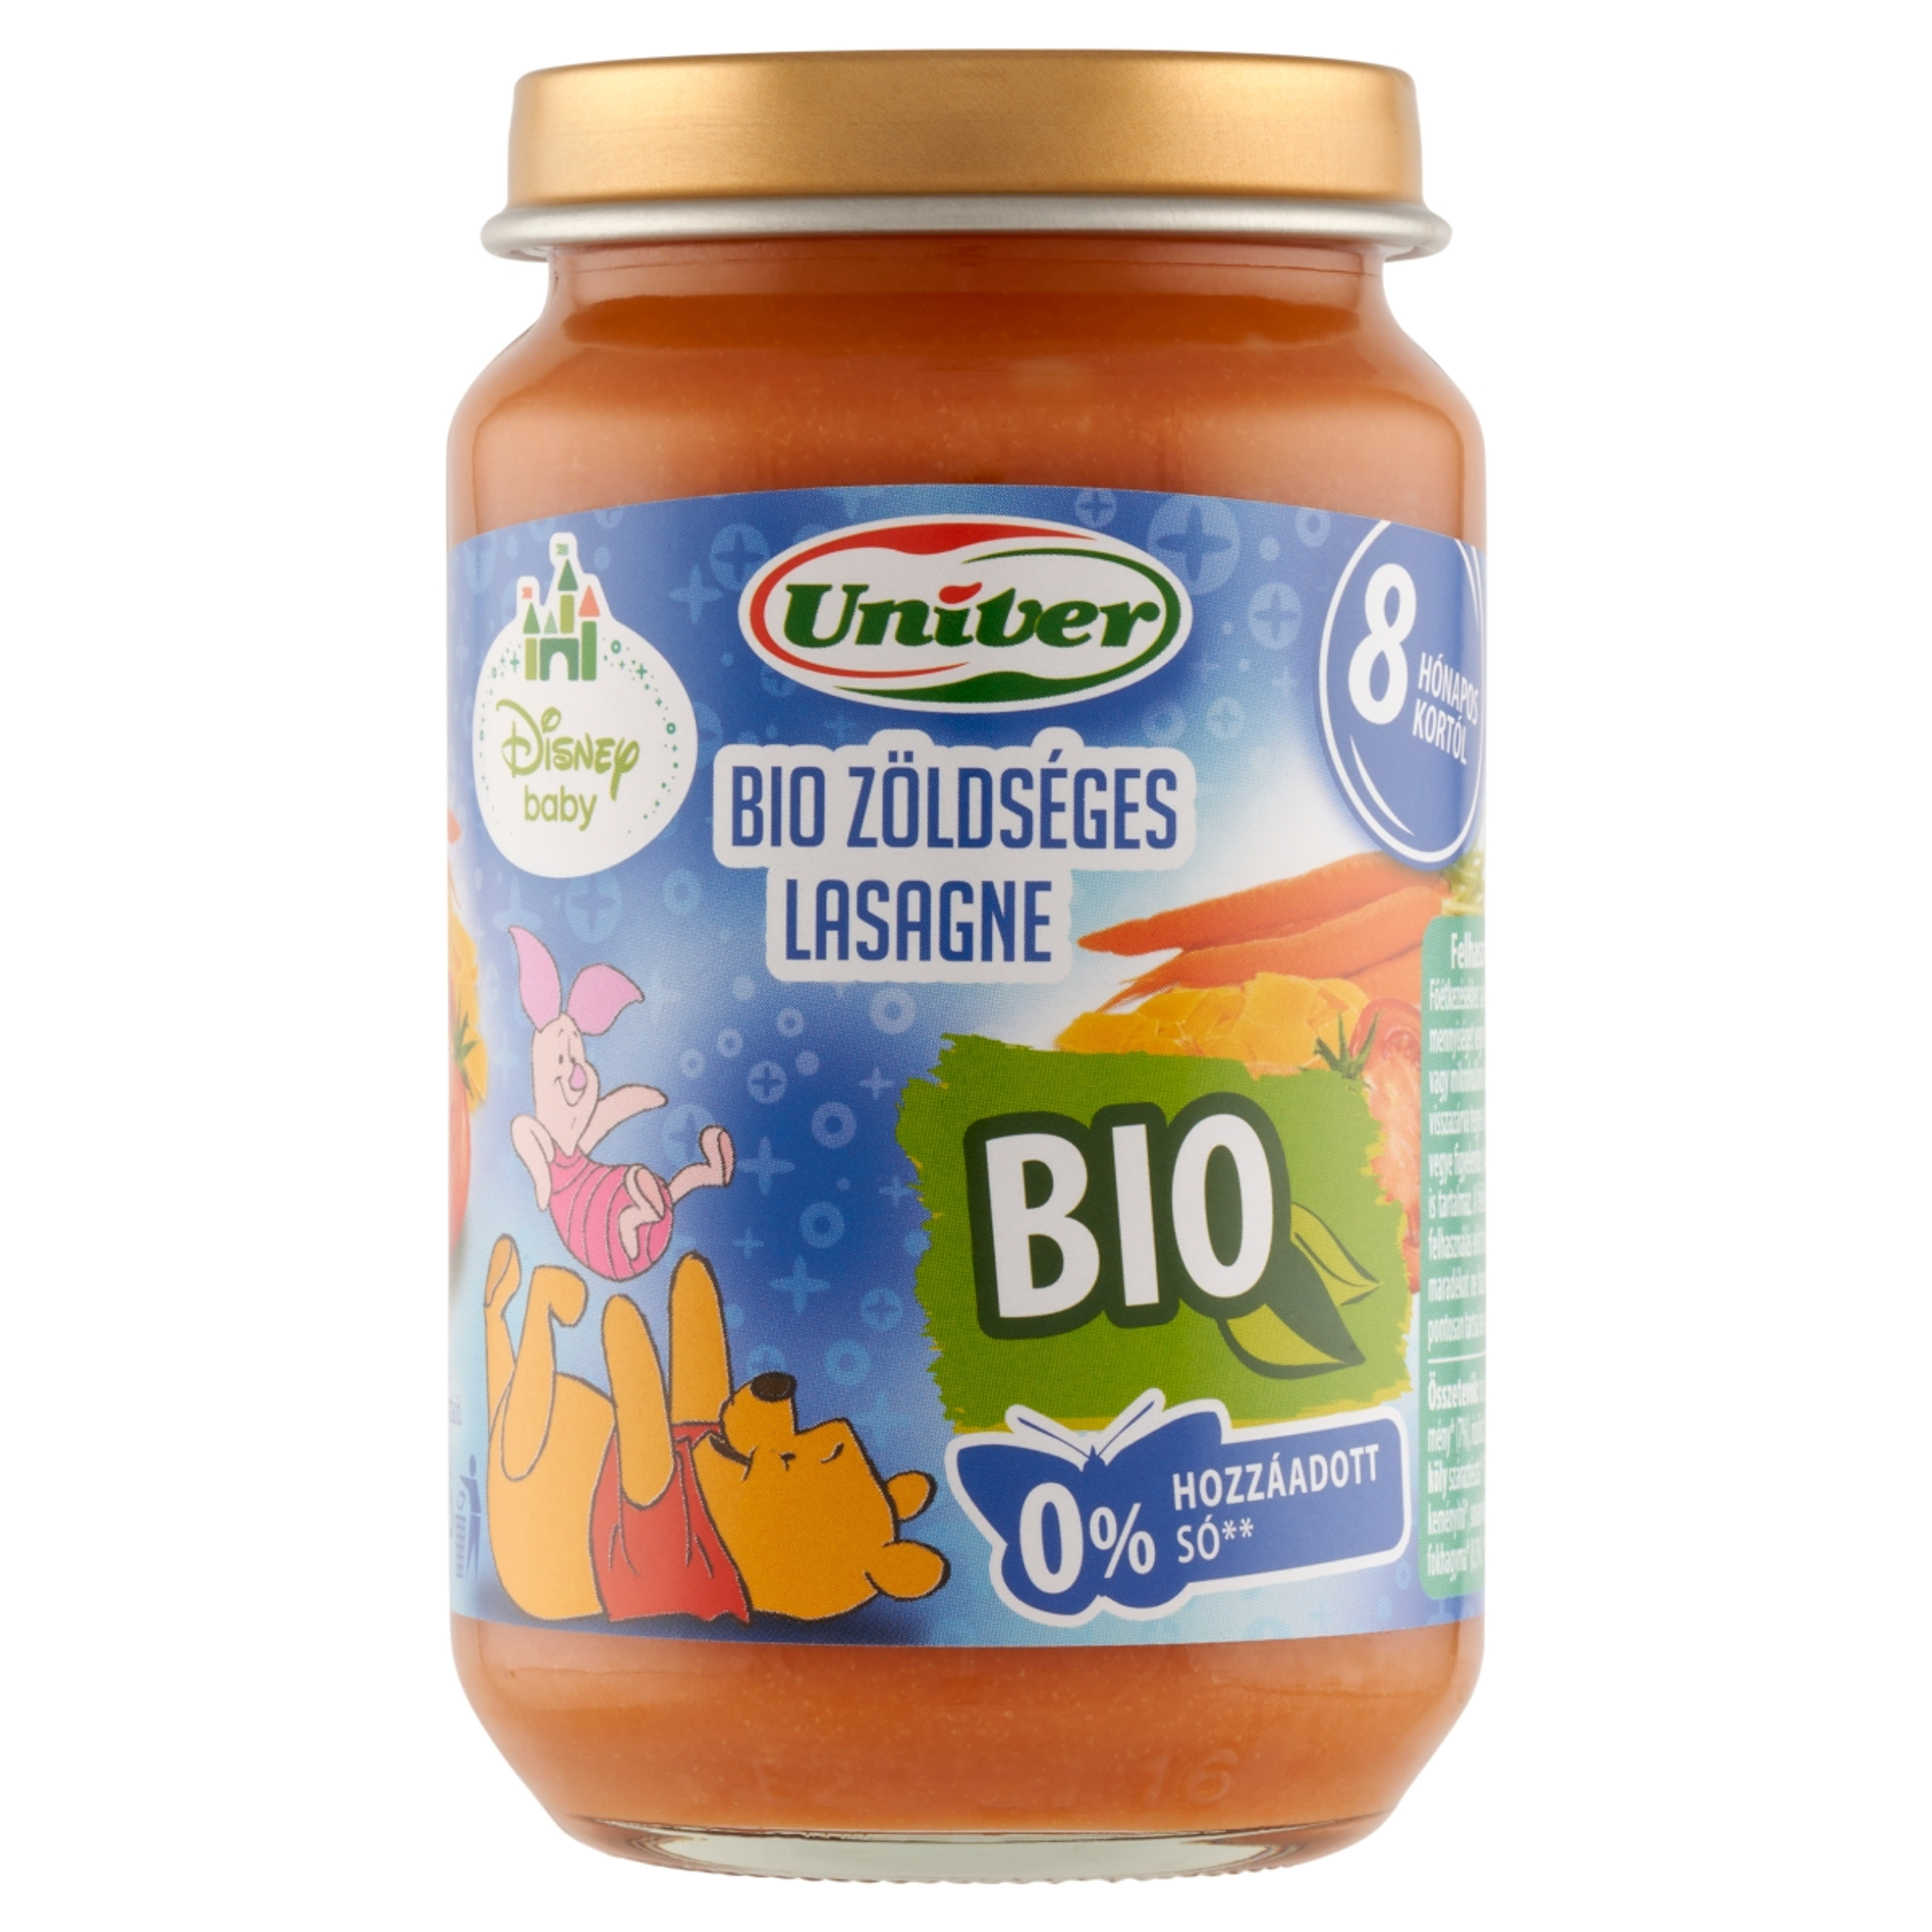 Univer Disney Baby bio zöldséges lasagne bébiétel 8 hónapos kortól - 163 g-1